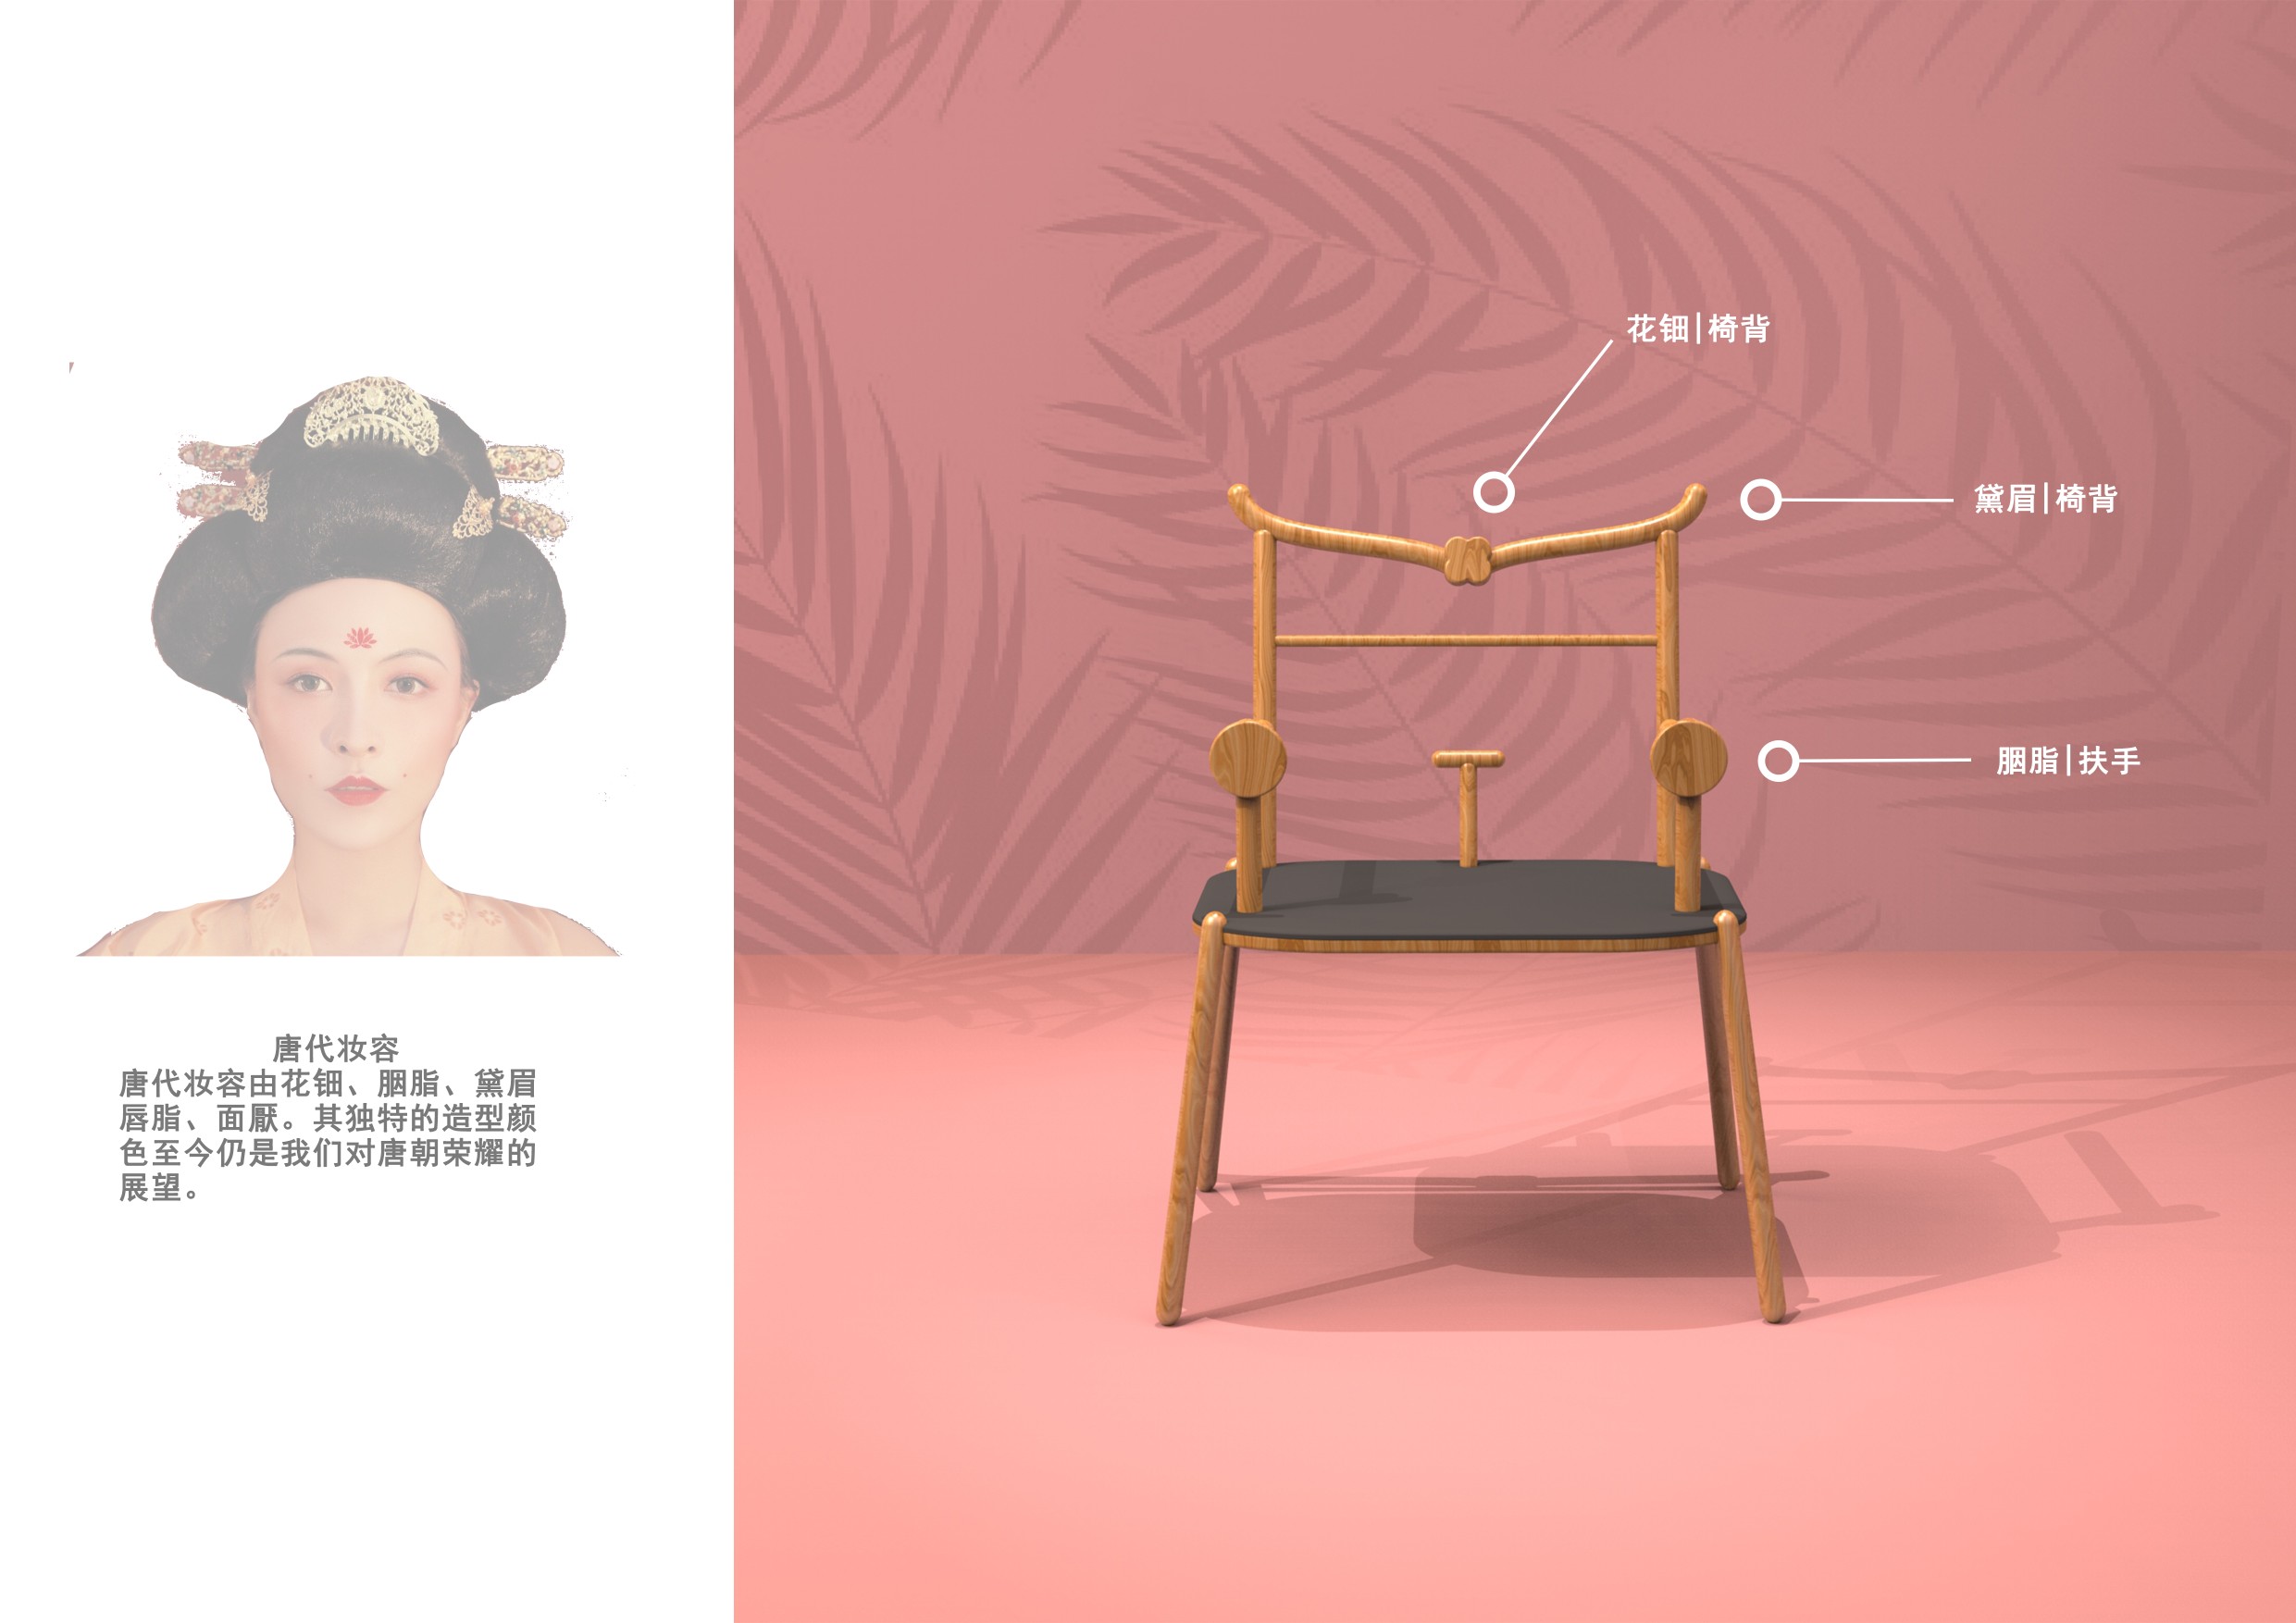 基于唐朝符号抽象化的中国椅文创设计